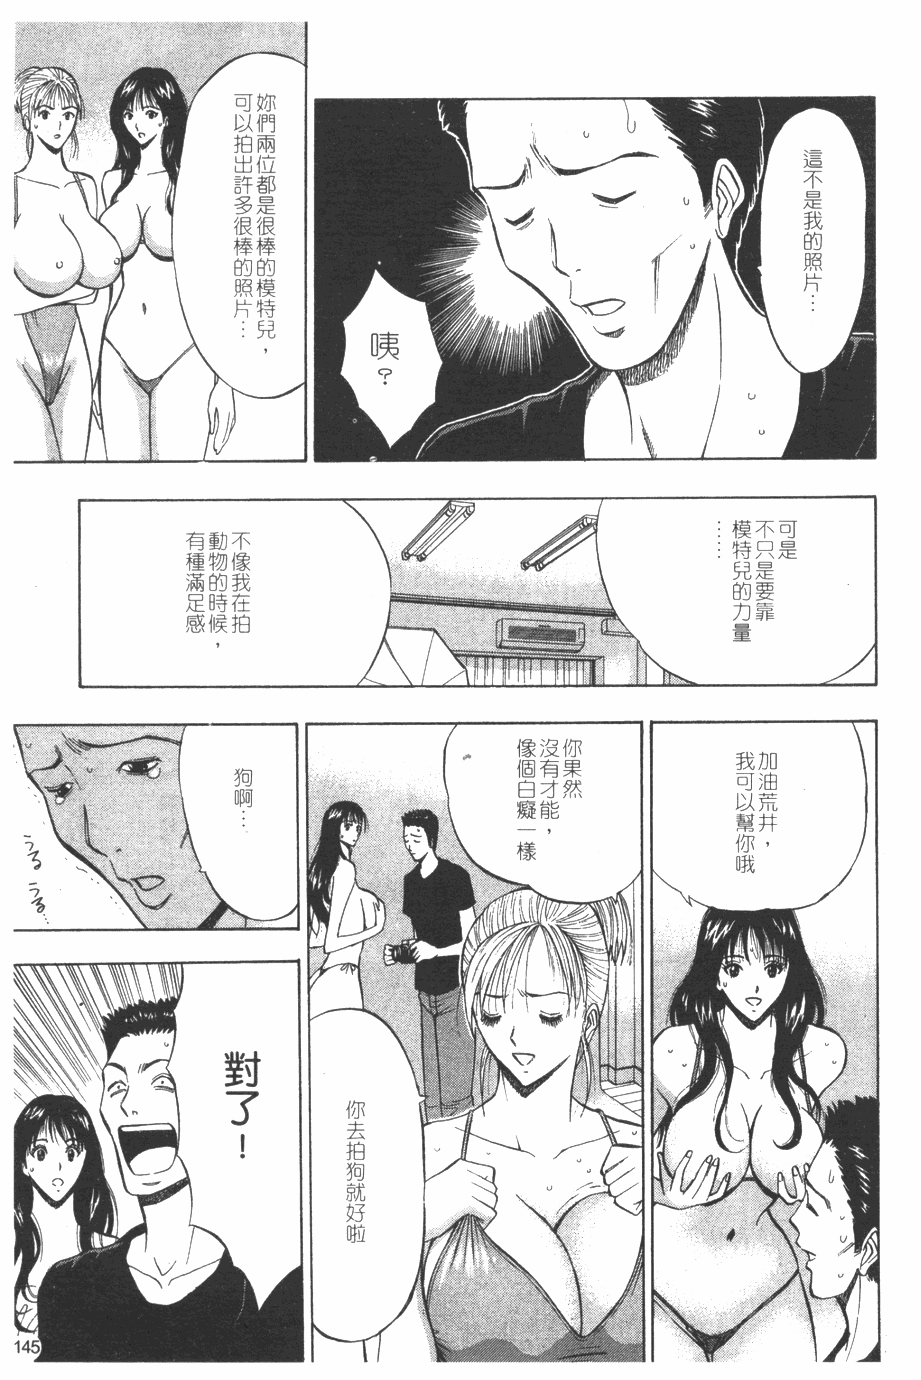 [Nagashima Chosuke] Sakuradoori no Megami - The Venus of SAKURA St. 1 [Chinese] 145